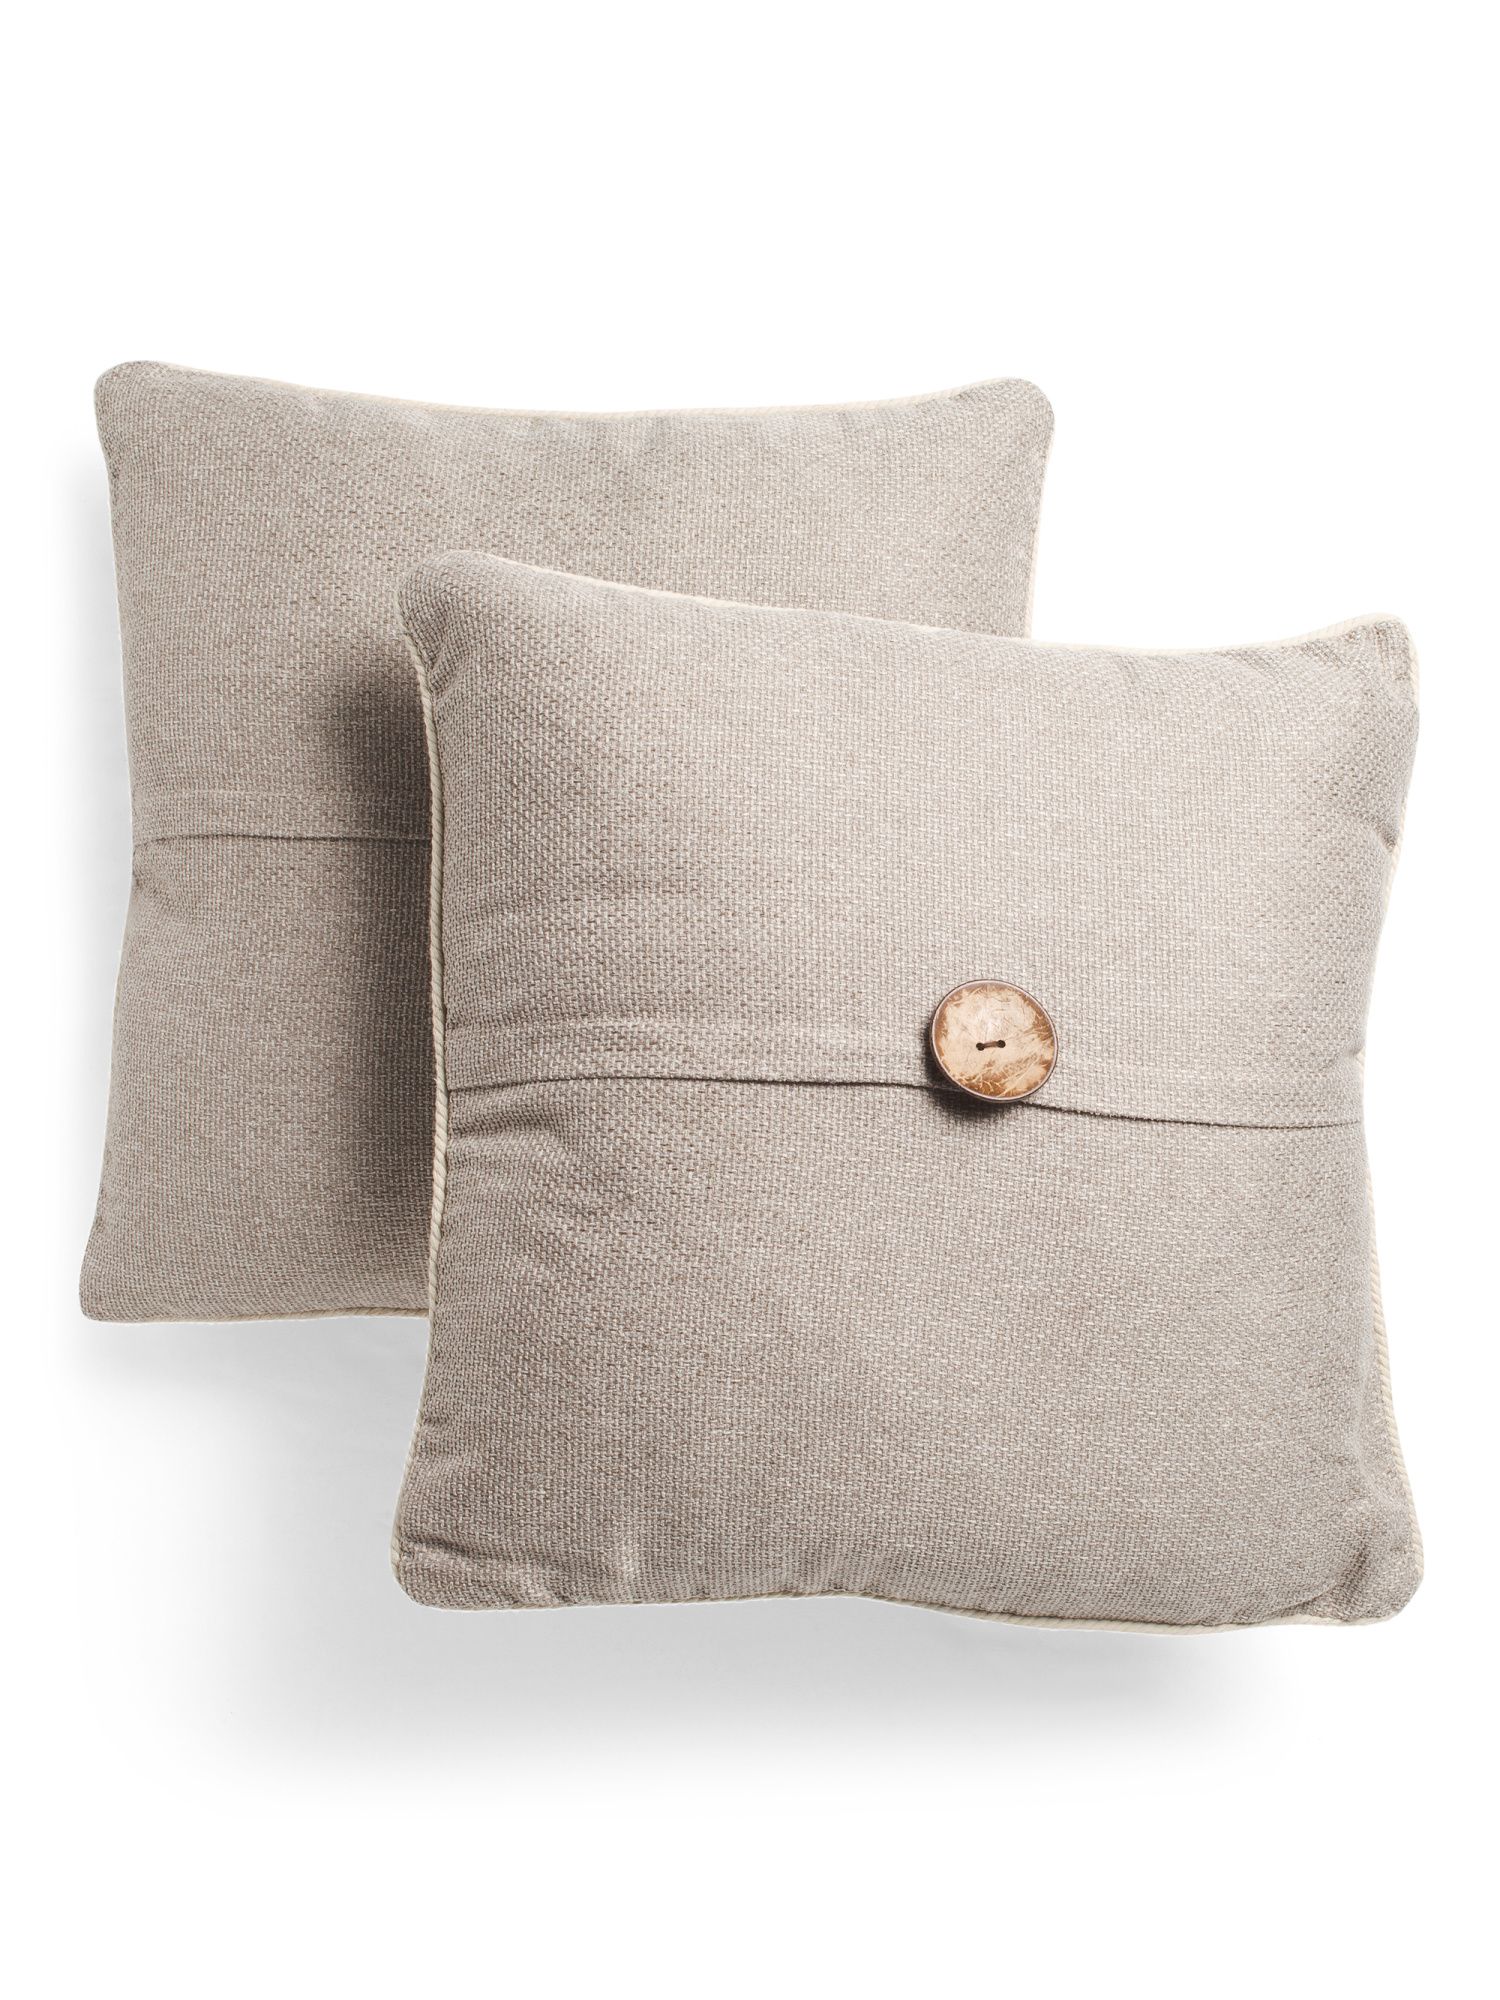 20x20 2pk Linen Look Button Pillow | TJ Maxx